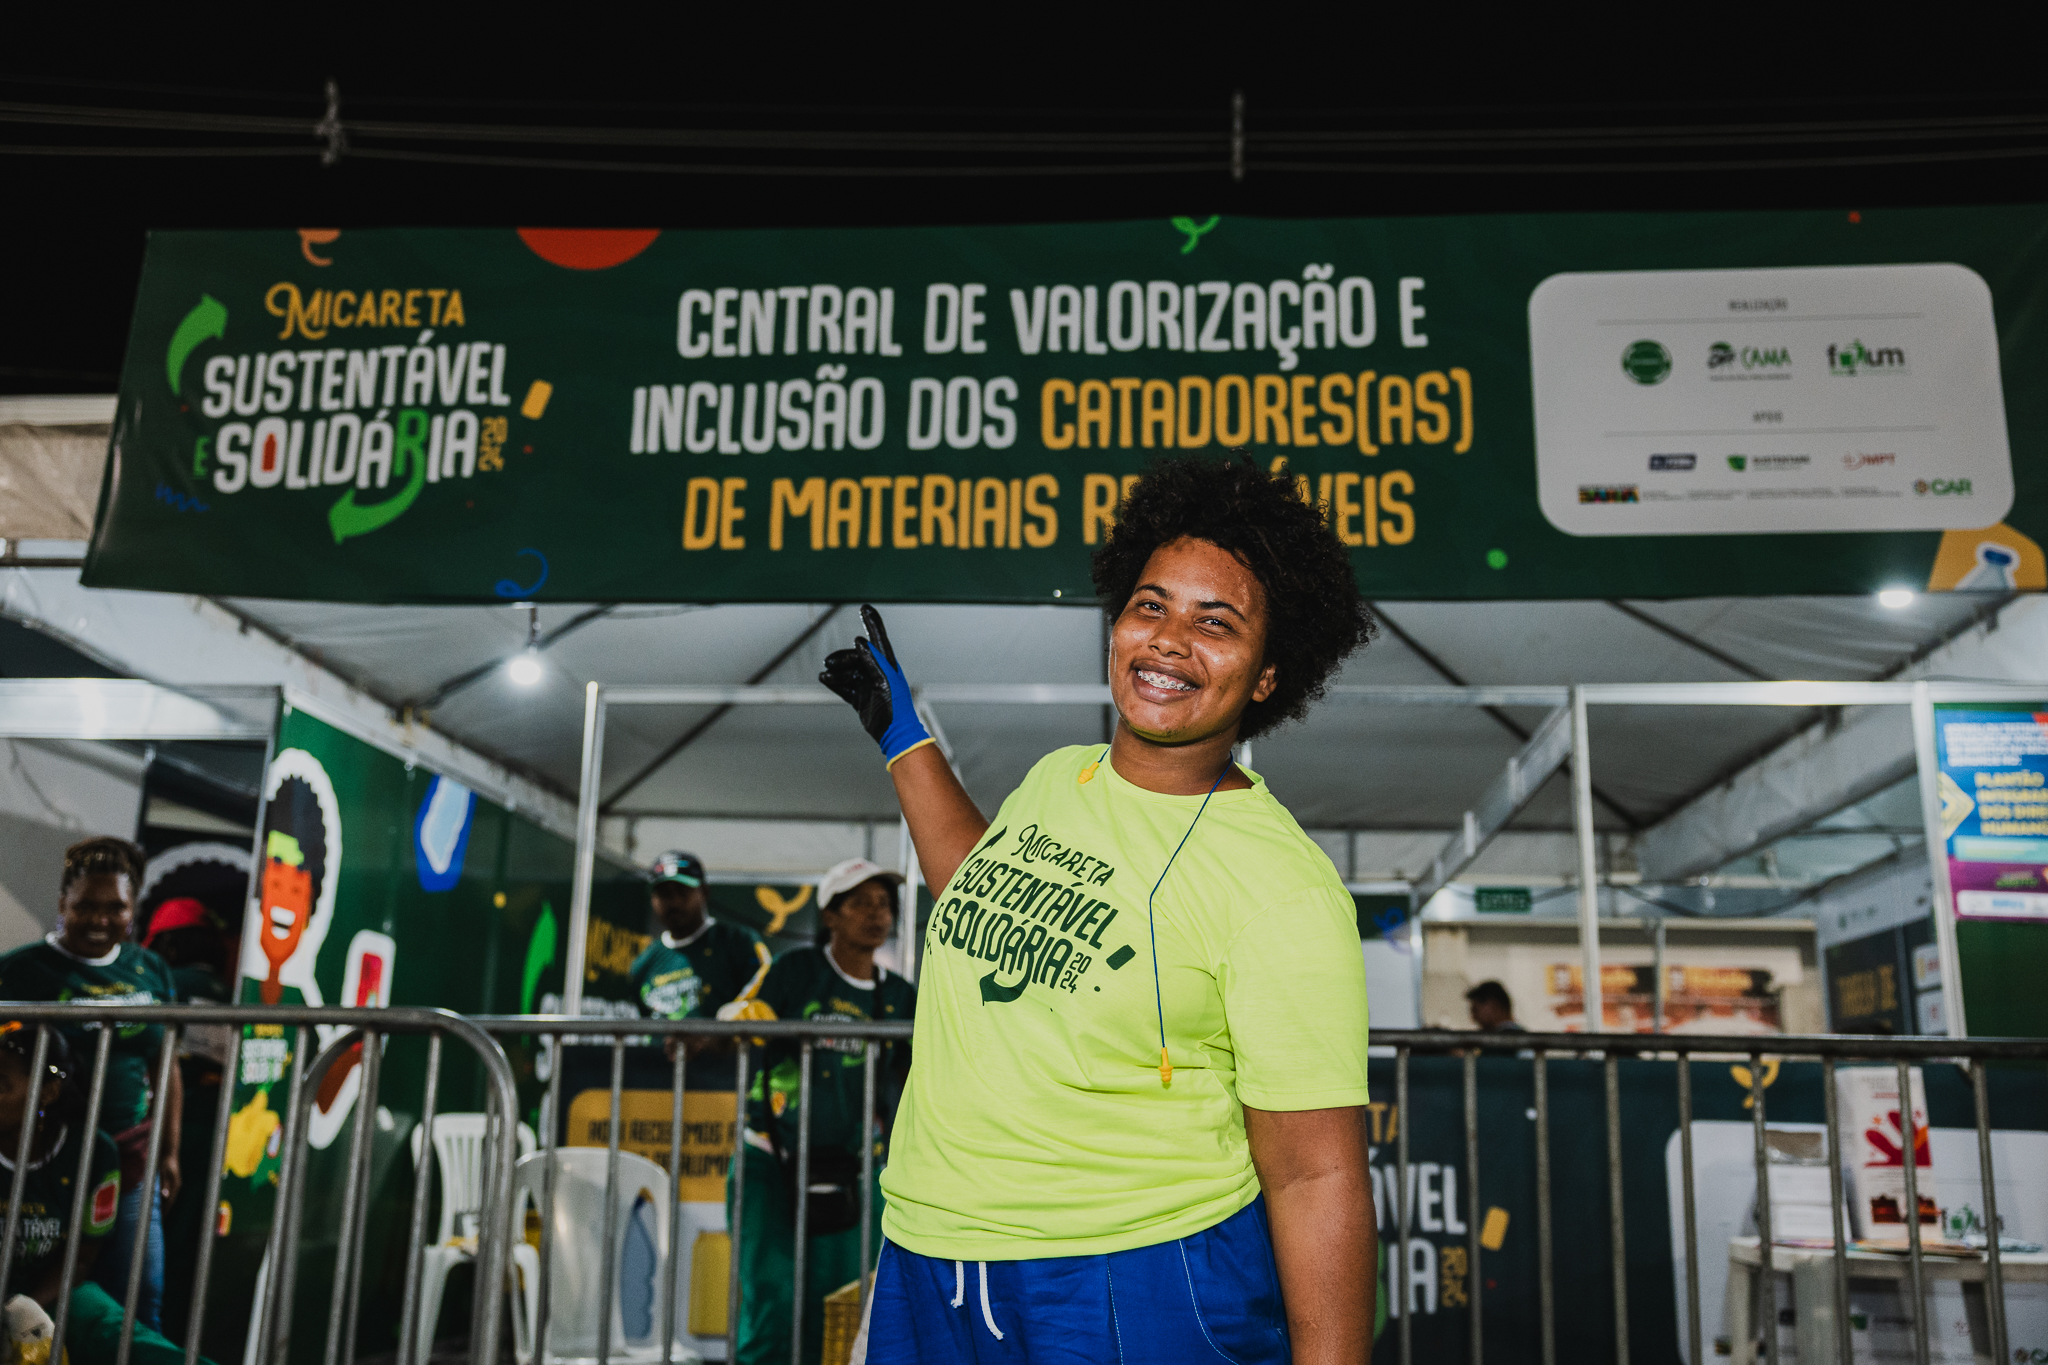 Projeto Inédito “Micareta Sustentável e Solidária” promove inclusão de catadores(as) na Micareta de Feira de Santana